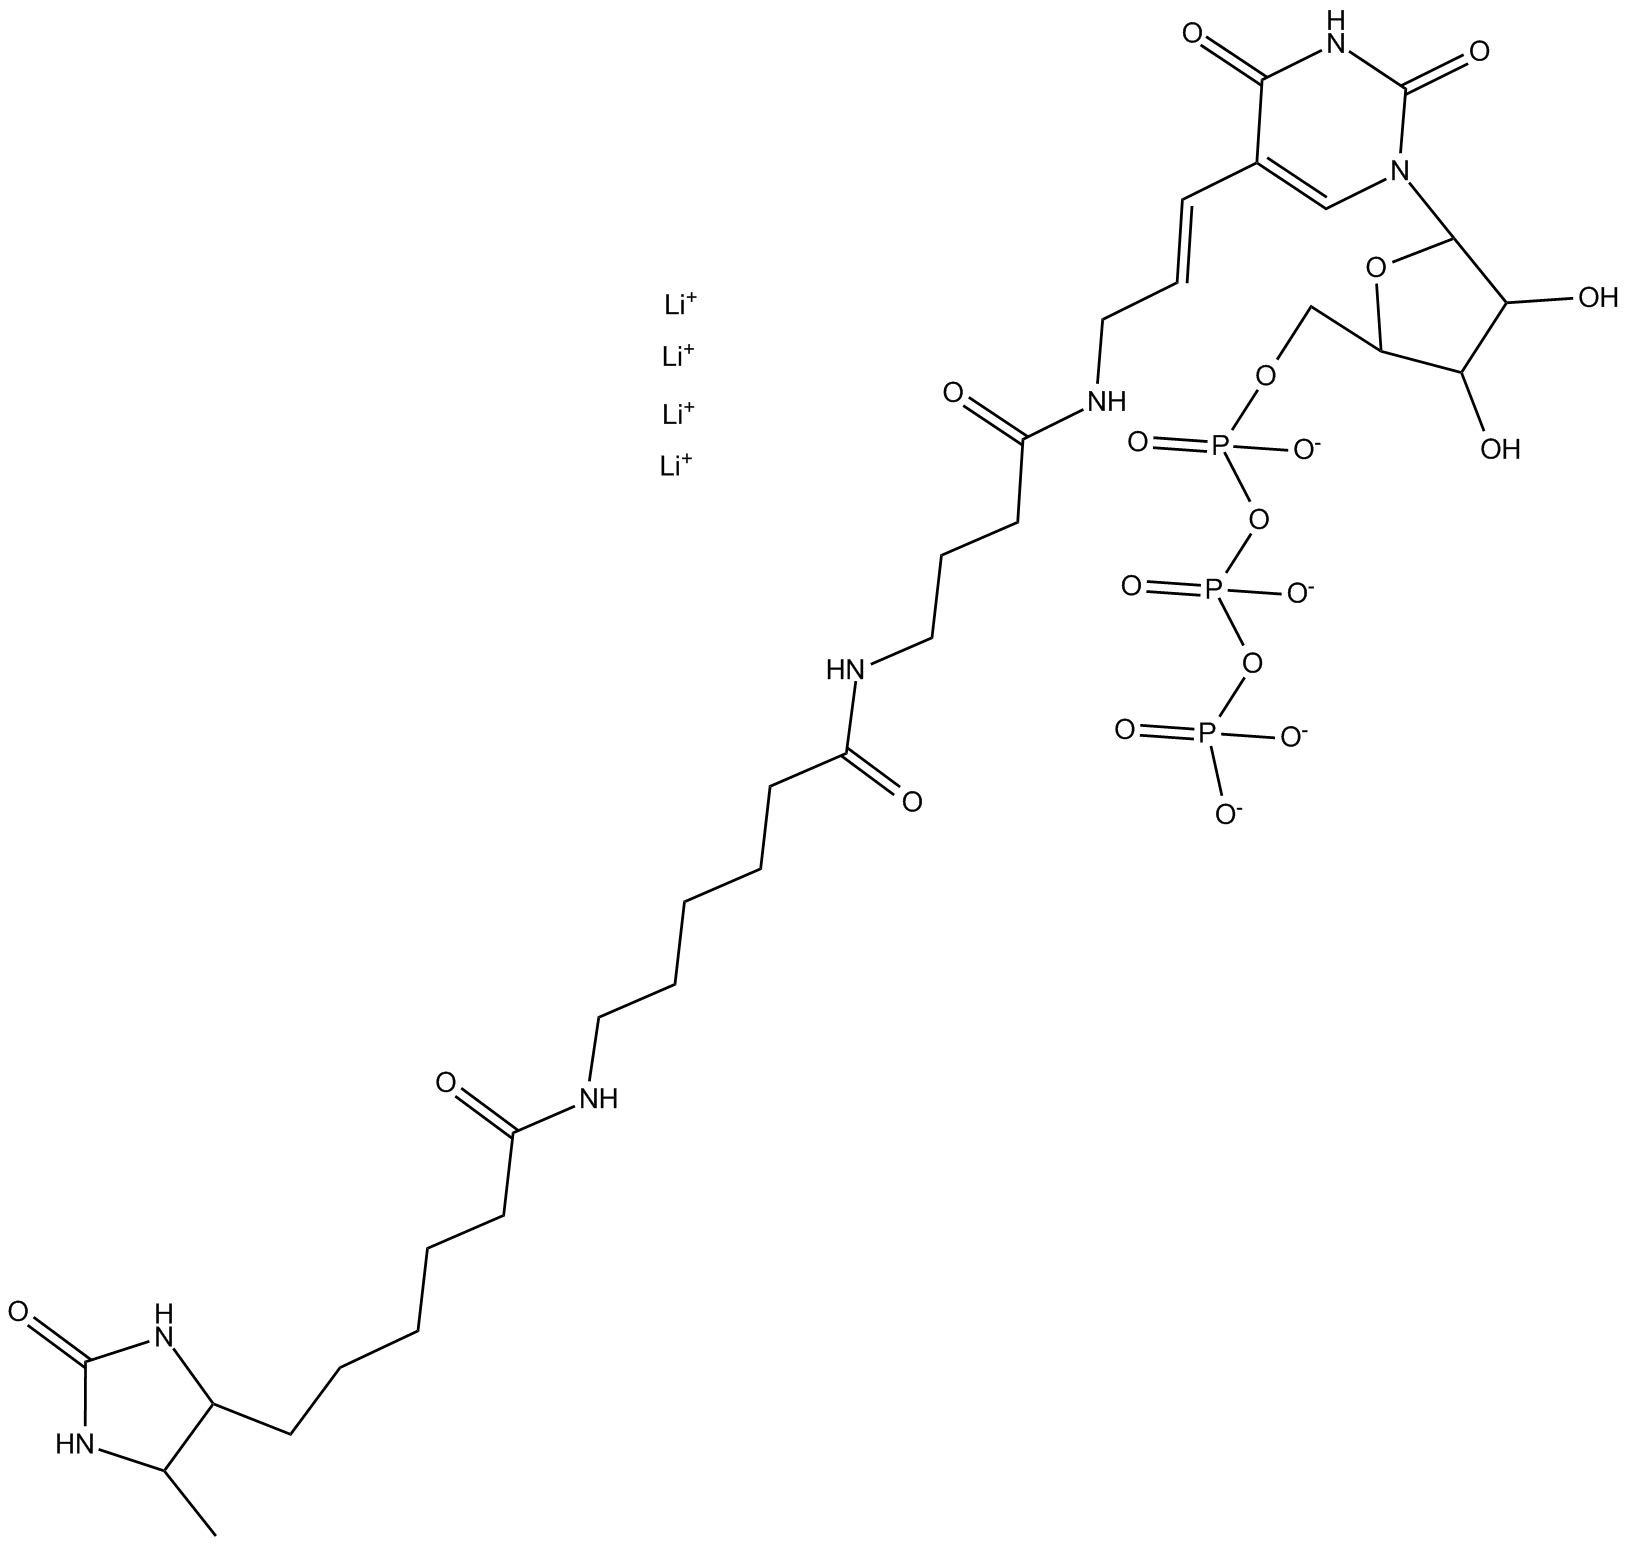 Desthiobiotin-16-UTP